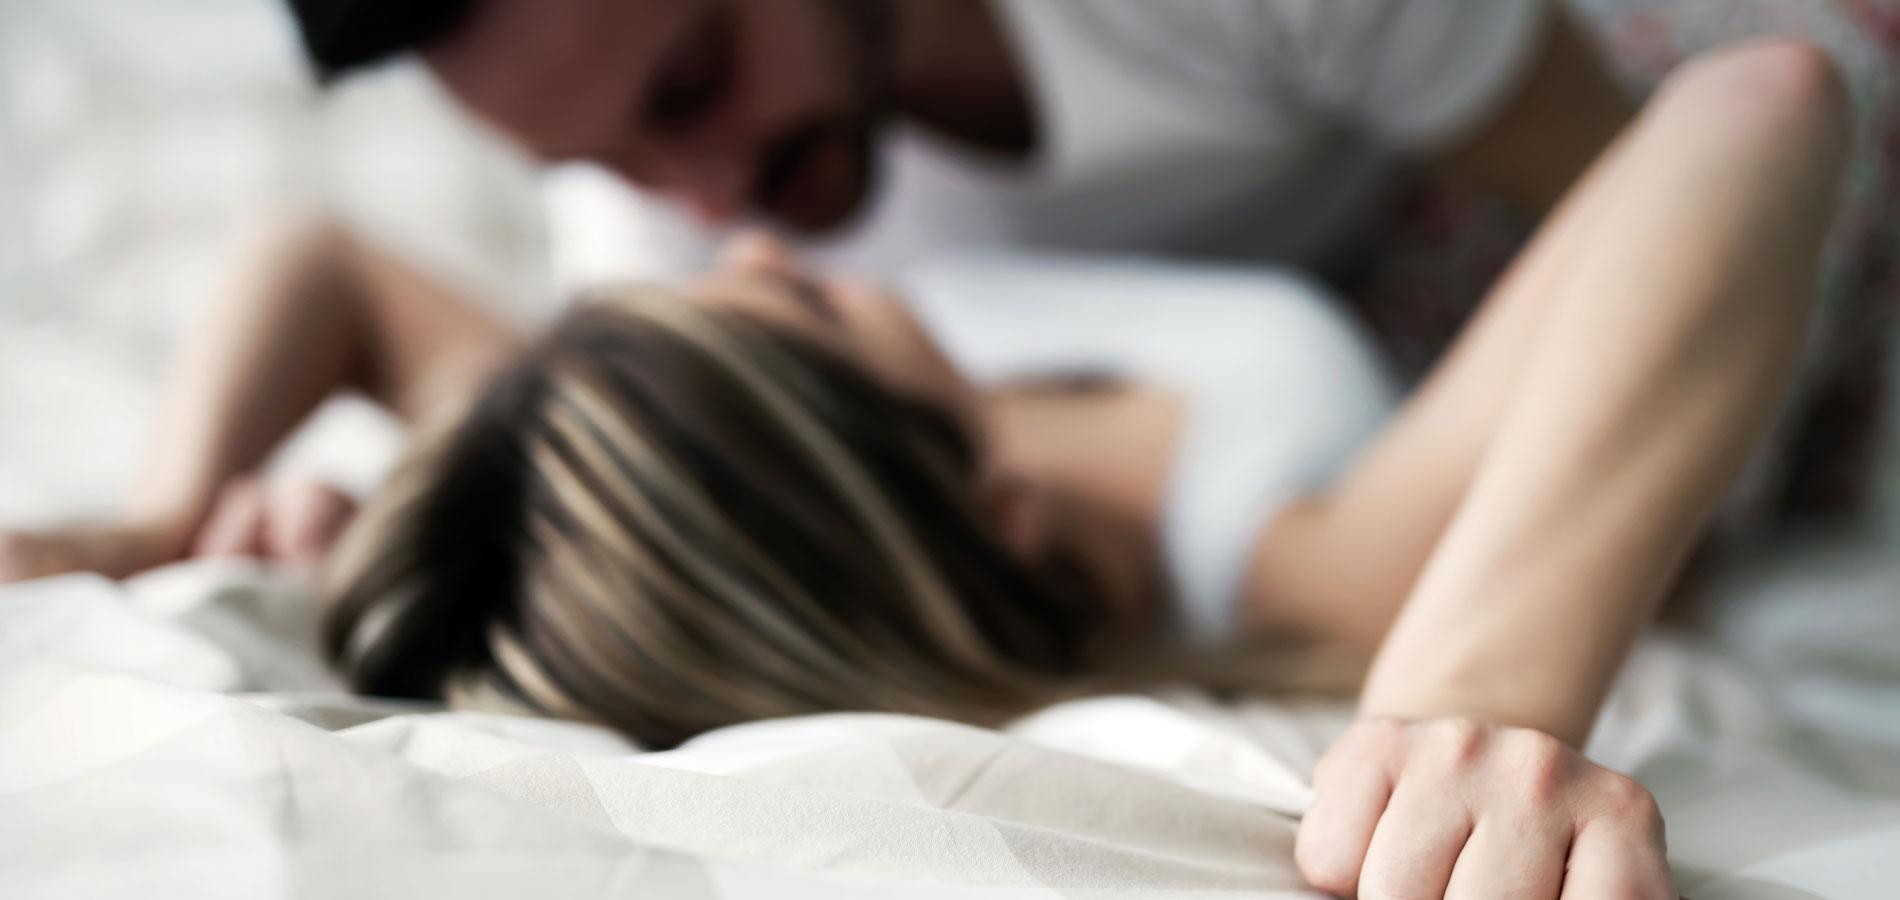 ce qui se passe dans un orgasme féminin chaud asiatique porno photo